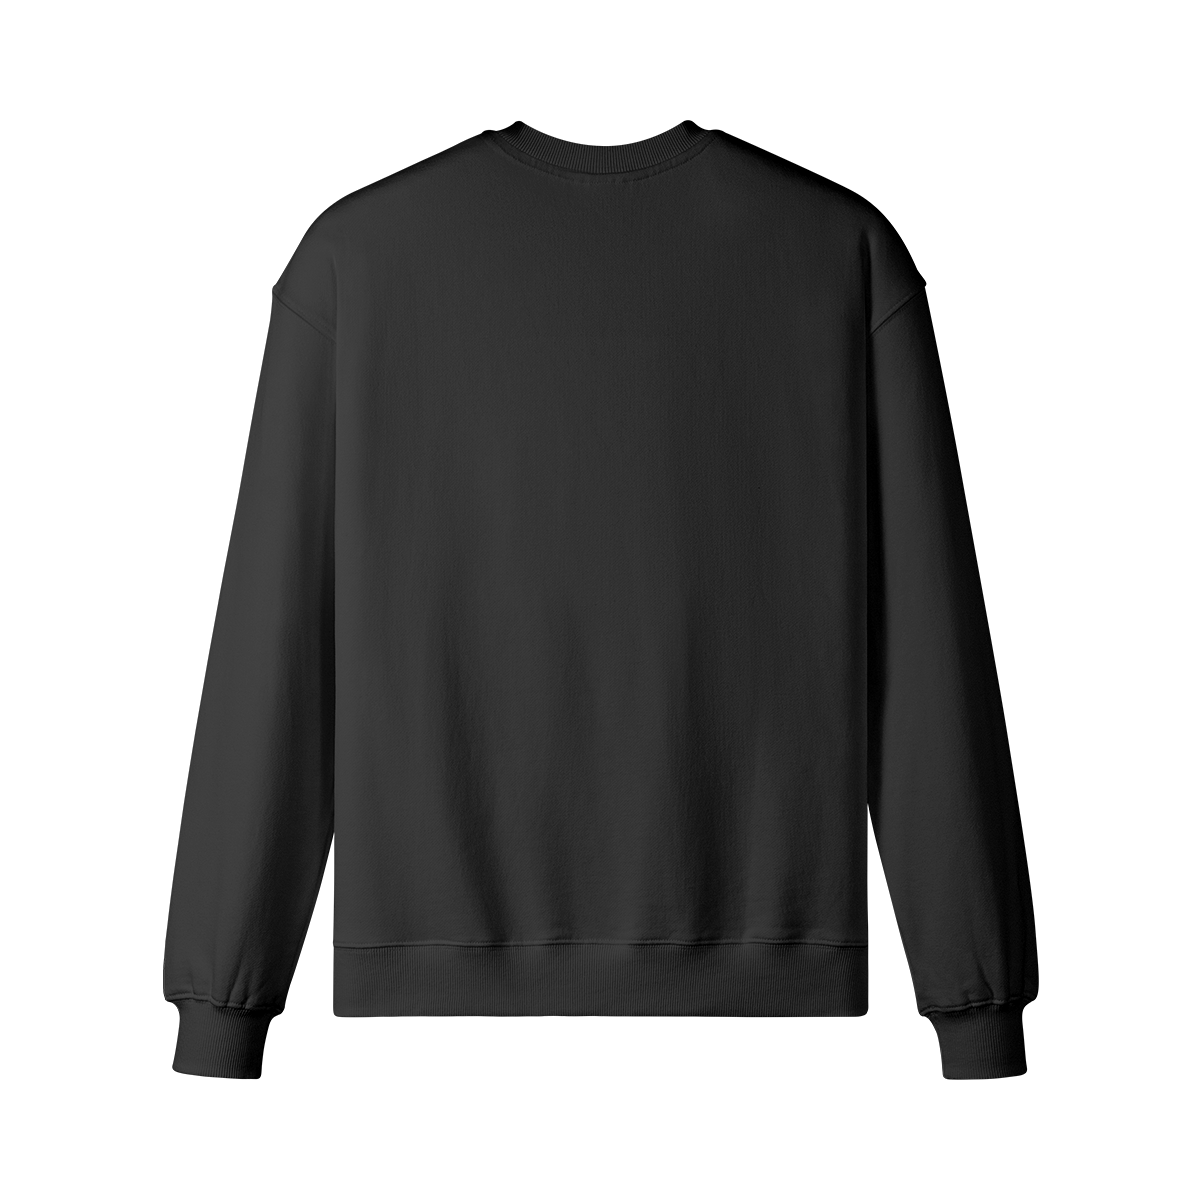 PSY EYE - Unisex Oversized Sweatshirt